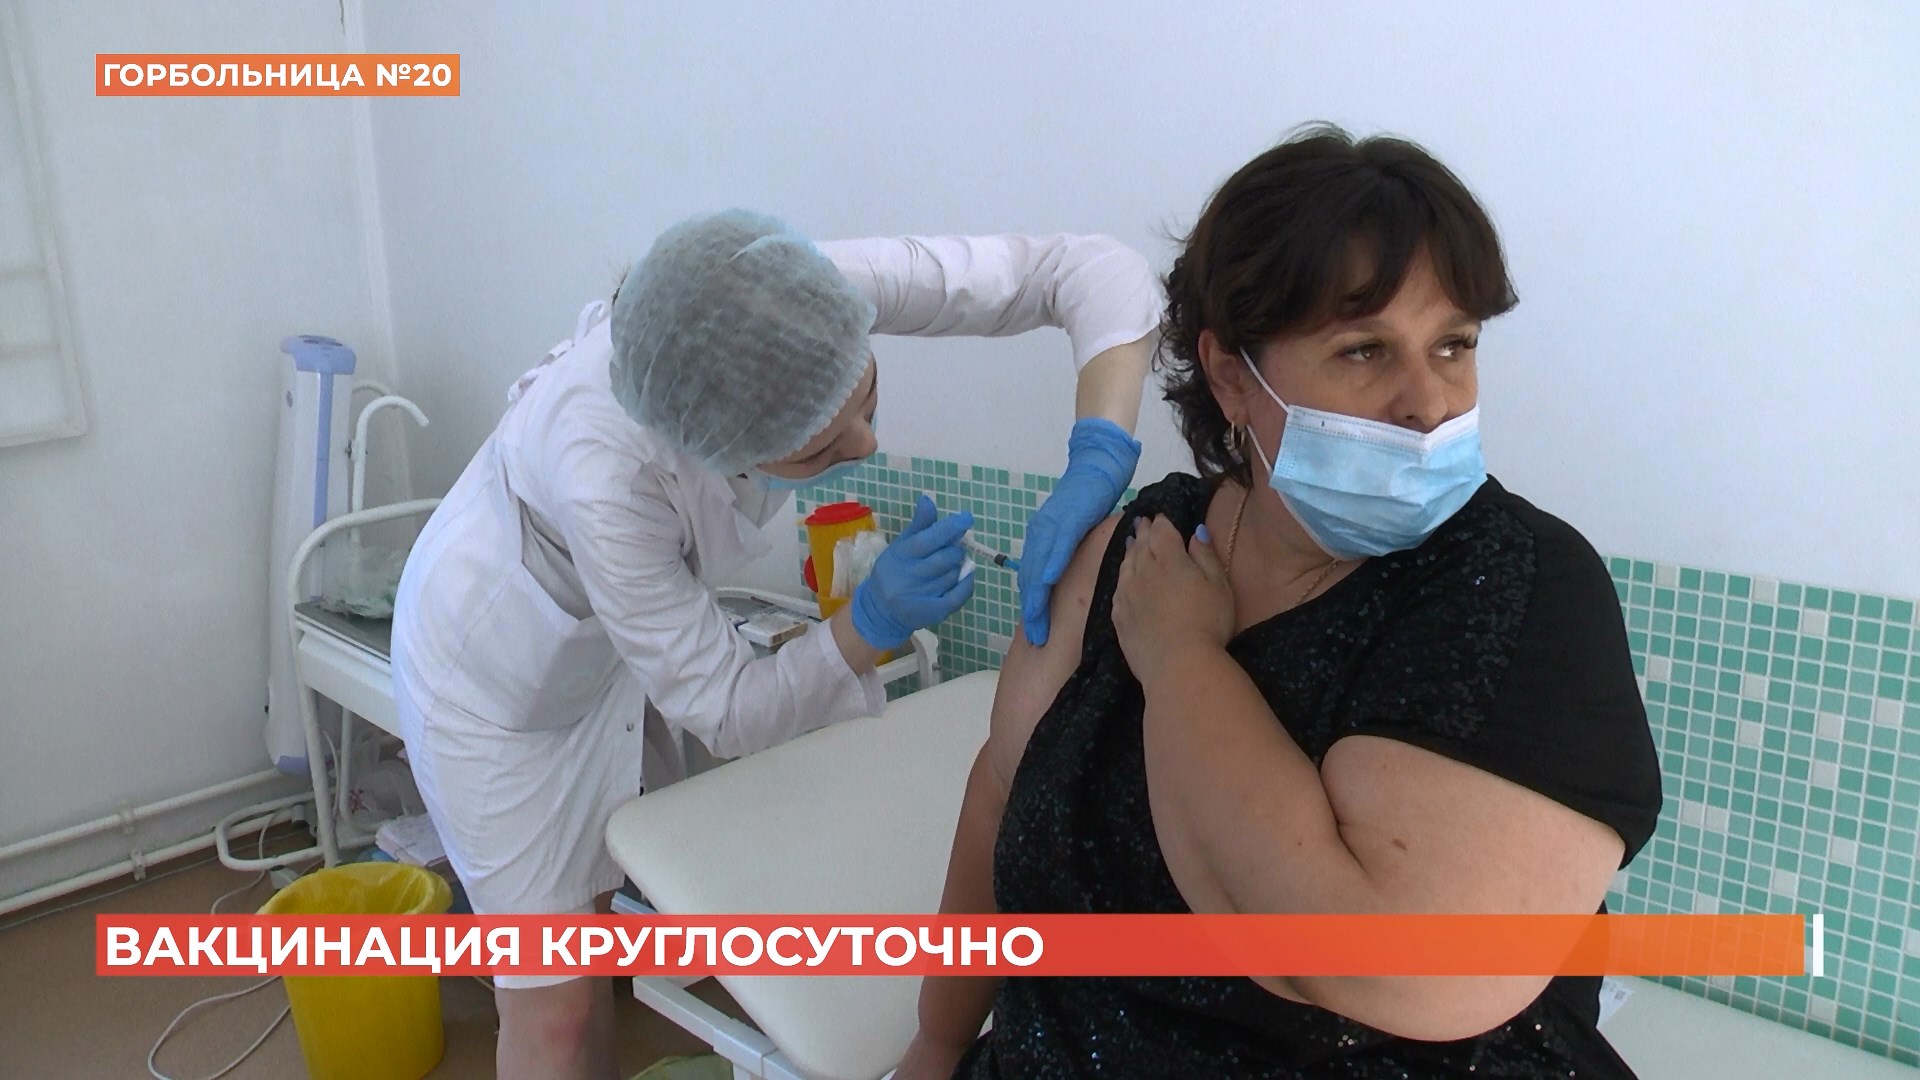 Круглосуточный пункт вакцинации заработал в Ростове